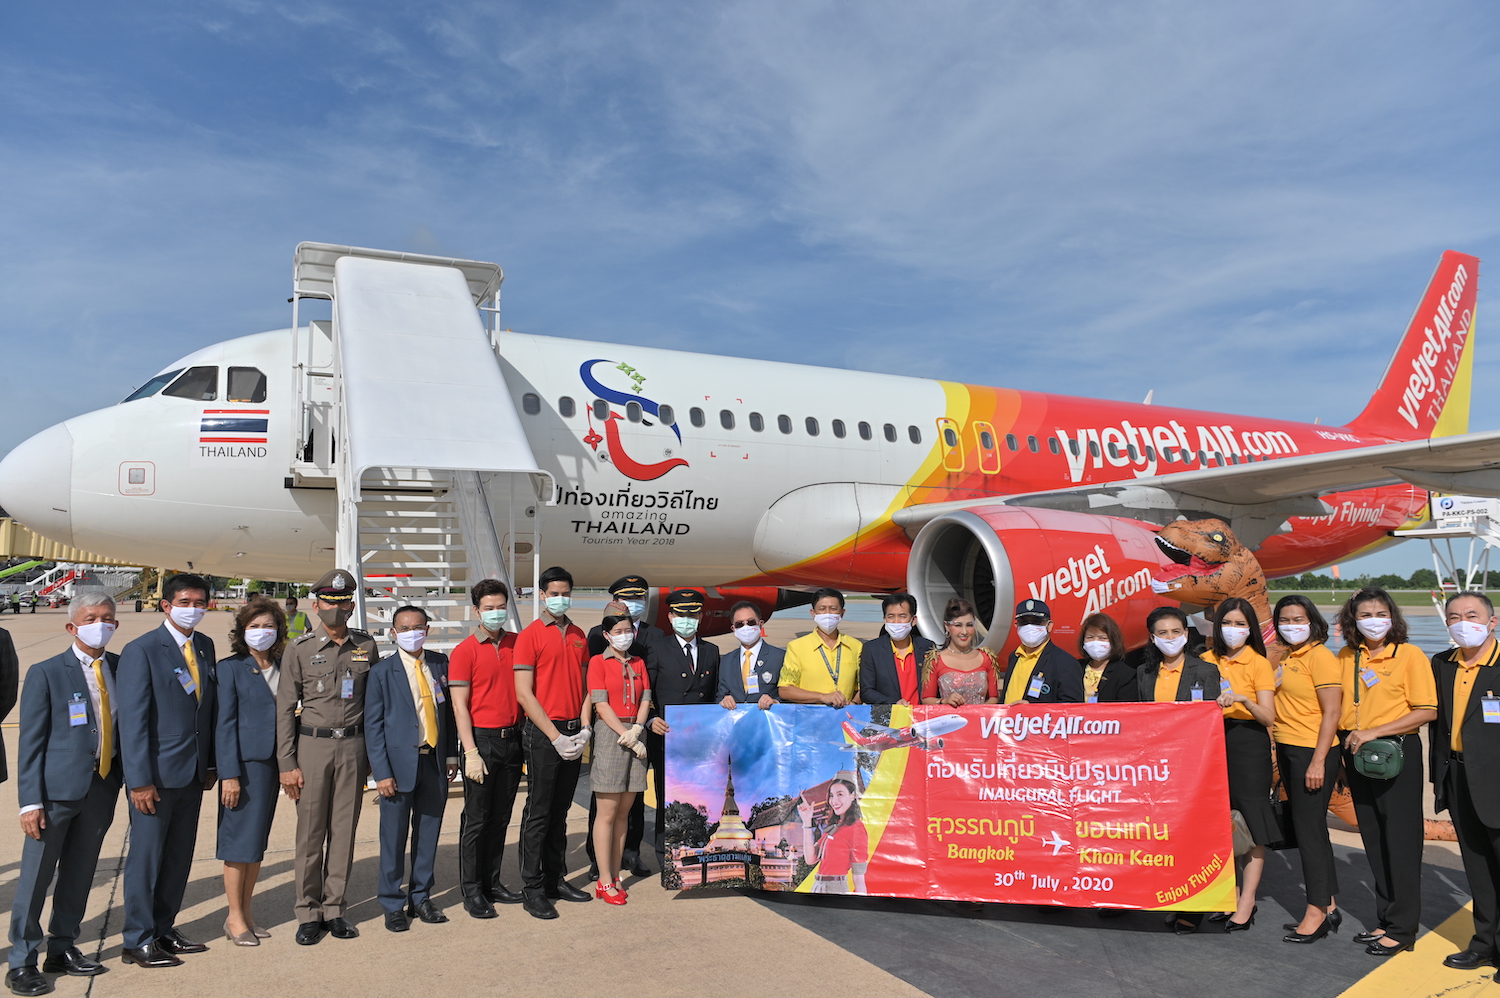 Vietjet Thái Lan khai trương đường bay Bangkok - Khon Kaen với màn biểu diễn của ca sỹ nổi tiếng Thái Lan Ying-Lee trên tàu bay